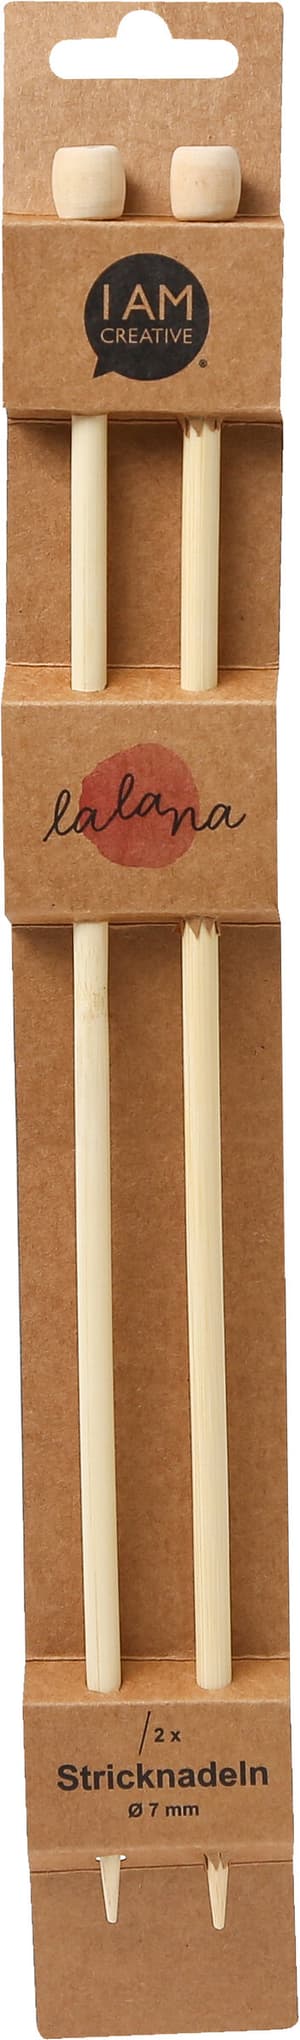 Stricknadeln, Bambus-Stricknadeln für Anfänger und Experten, Natur, ø 7 x 350 mm, 2 Stk.